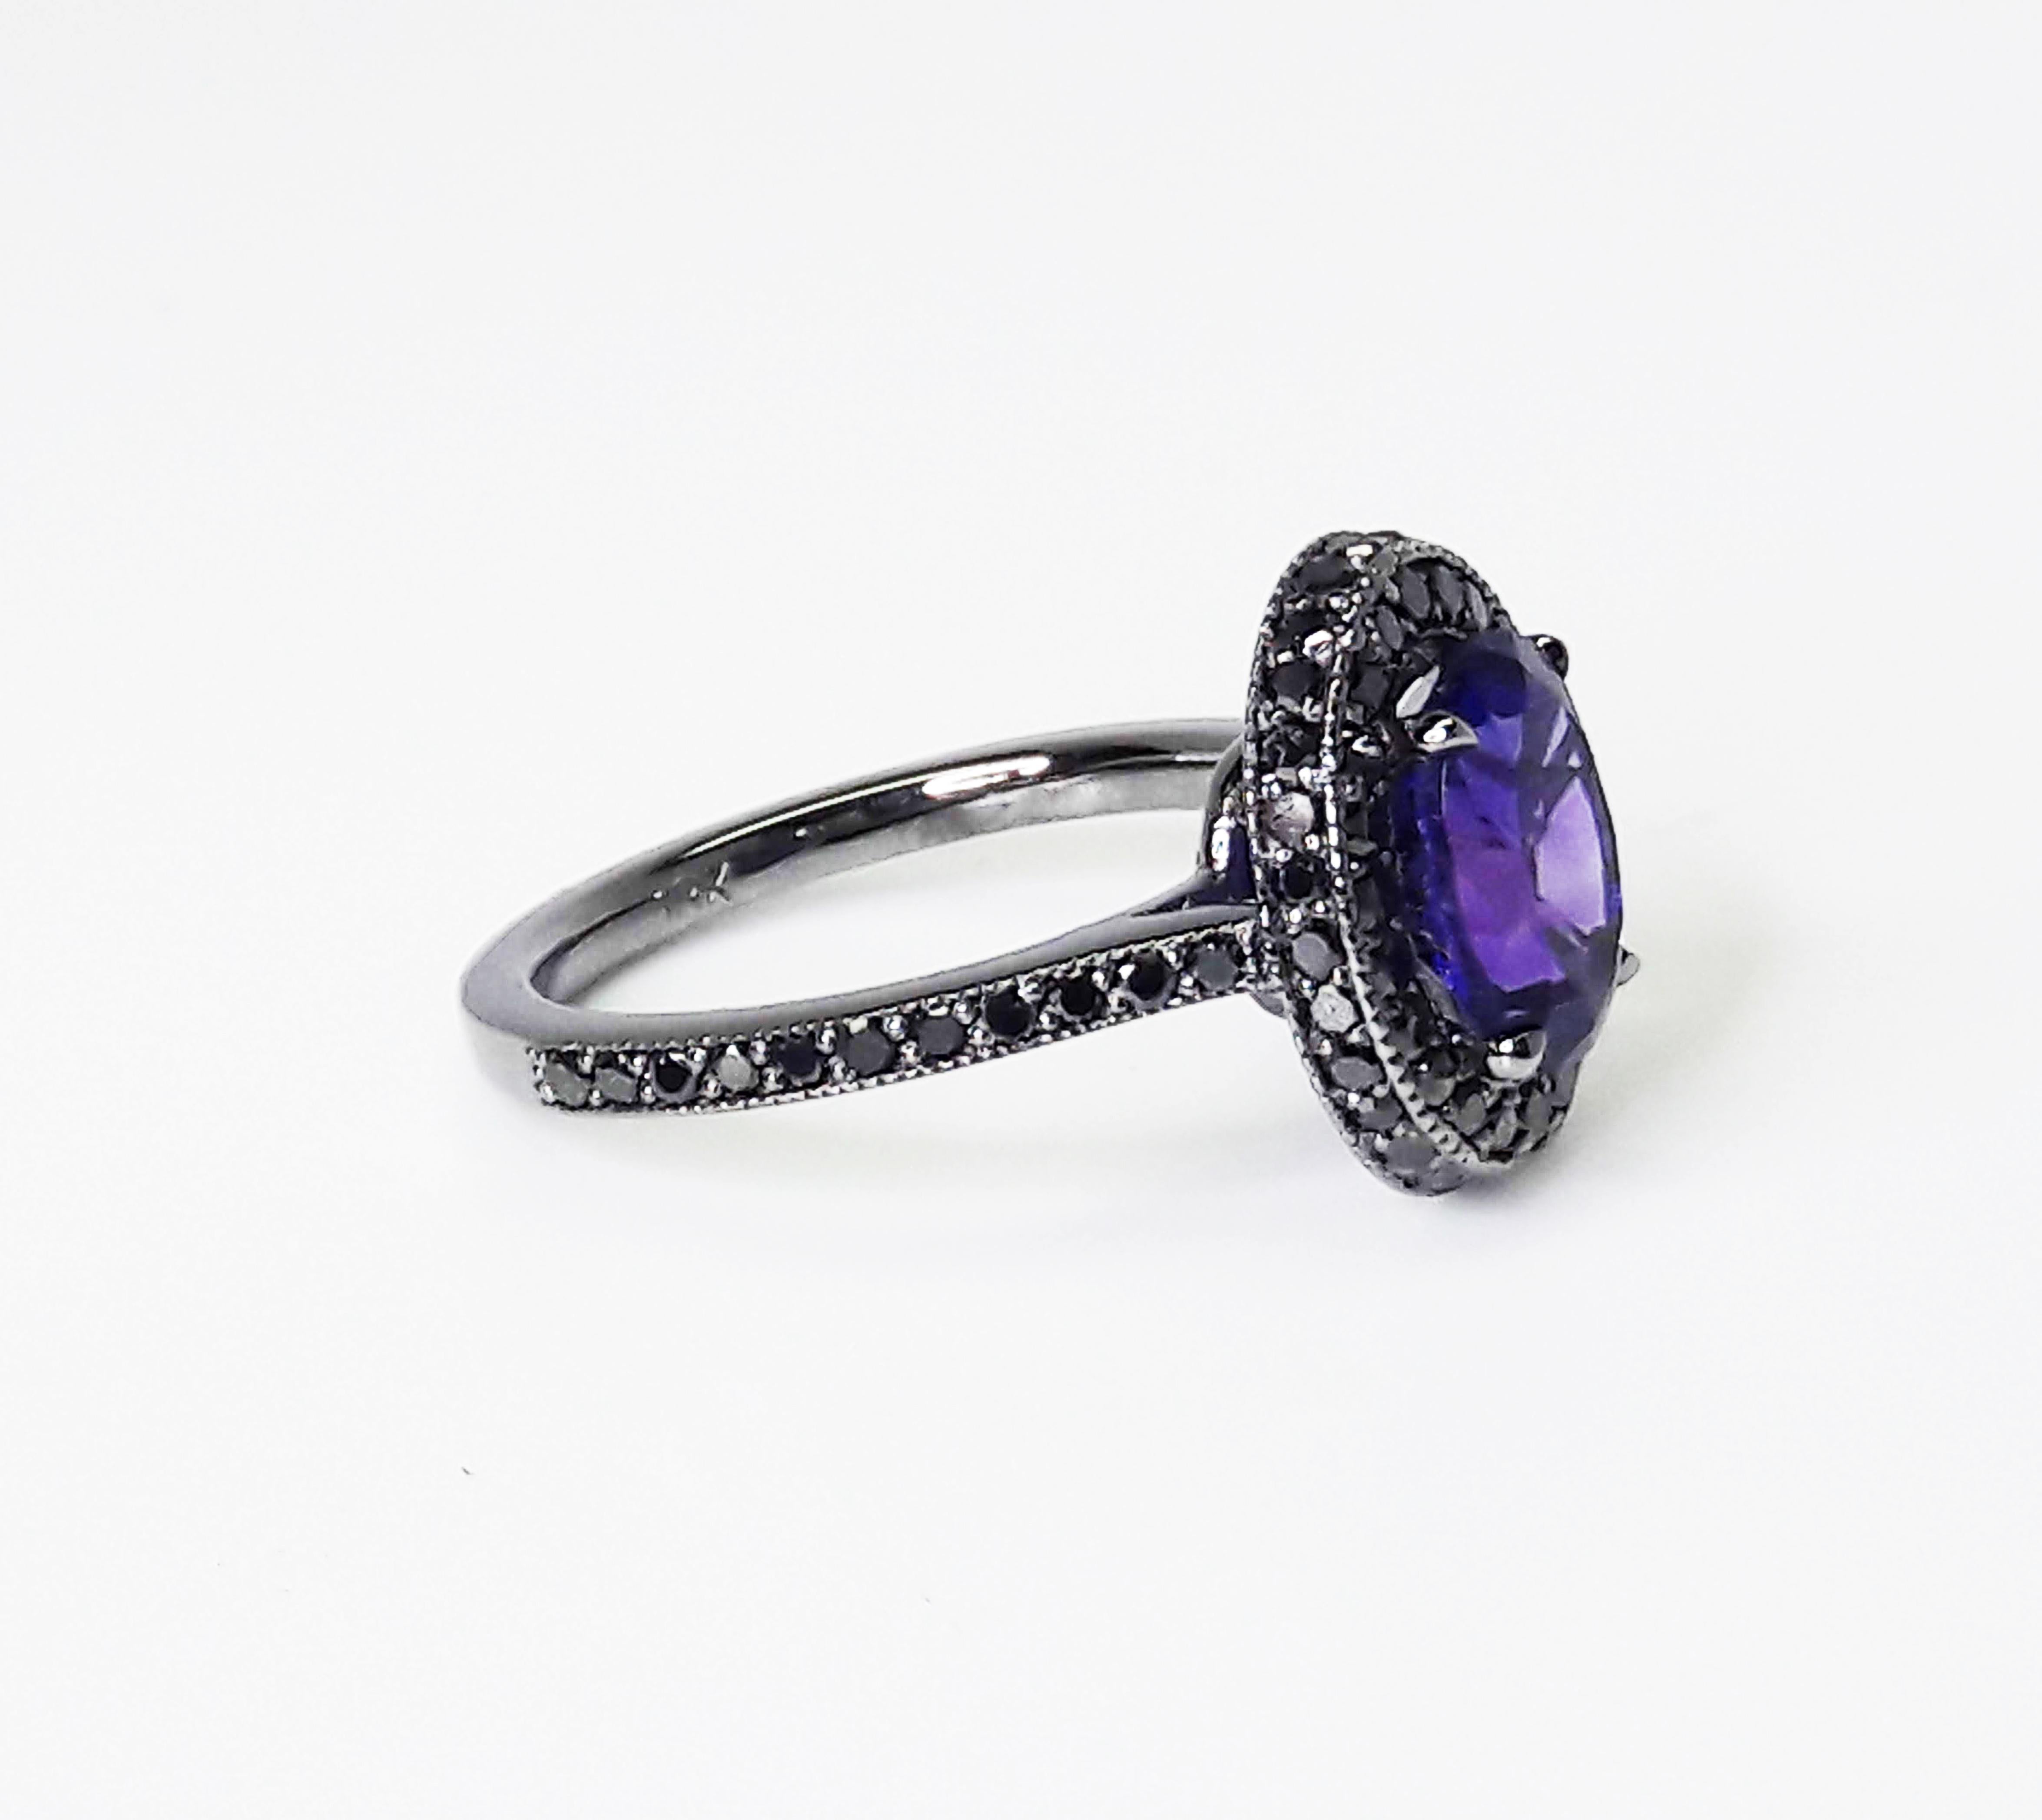 Améthyste naturelle violette de 1,5 carat ornée d'un double halo de diamants noirs pour un poids total de 0,52 carat, conçue dans une bague en or blanc 18k faite à la main, plaquée rhodium noir.

Fabriqué à la main avec les meilleures techniques